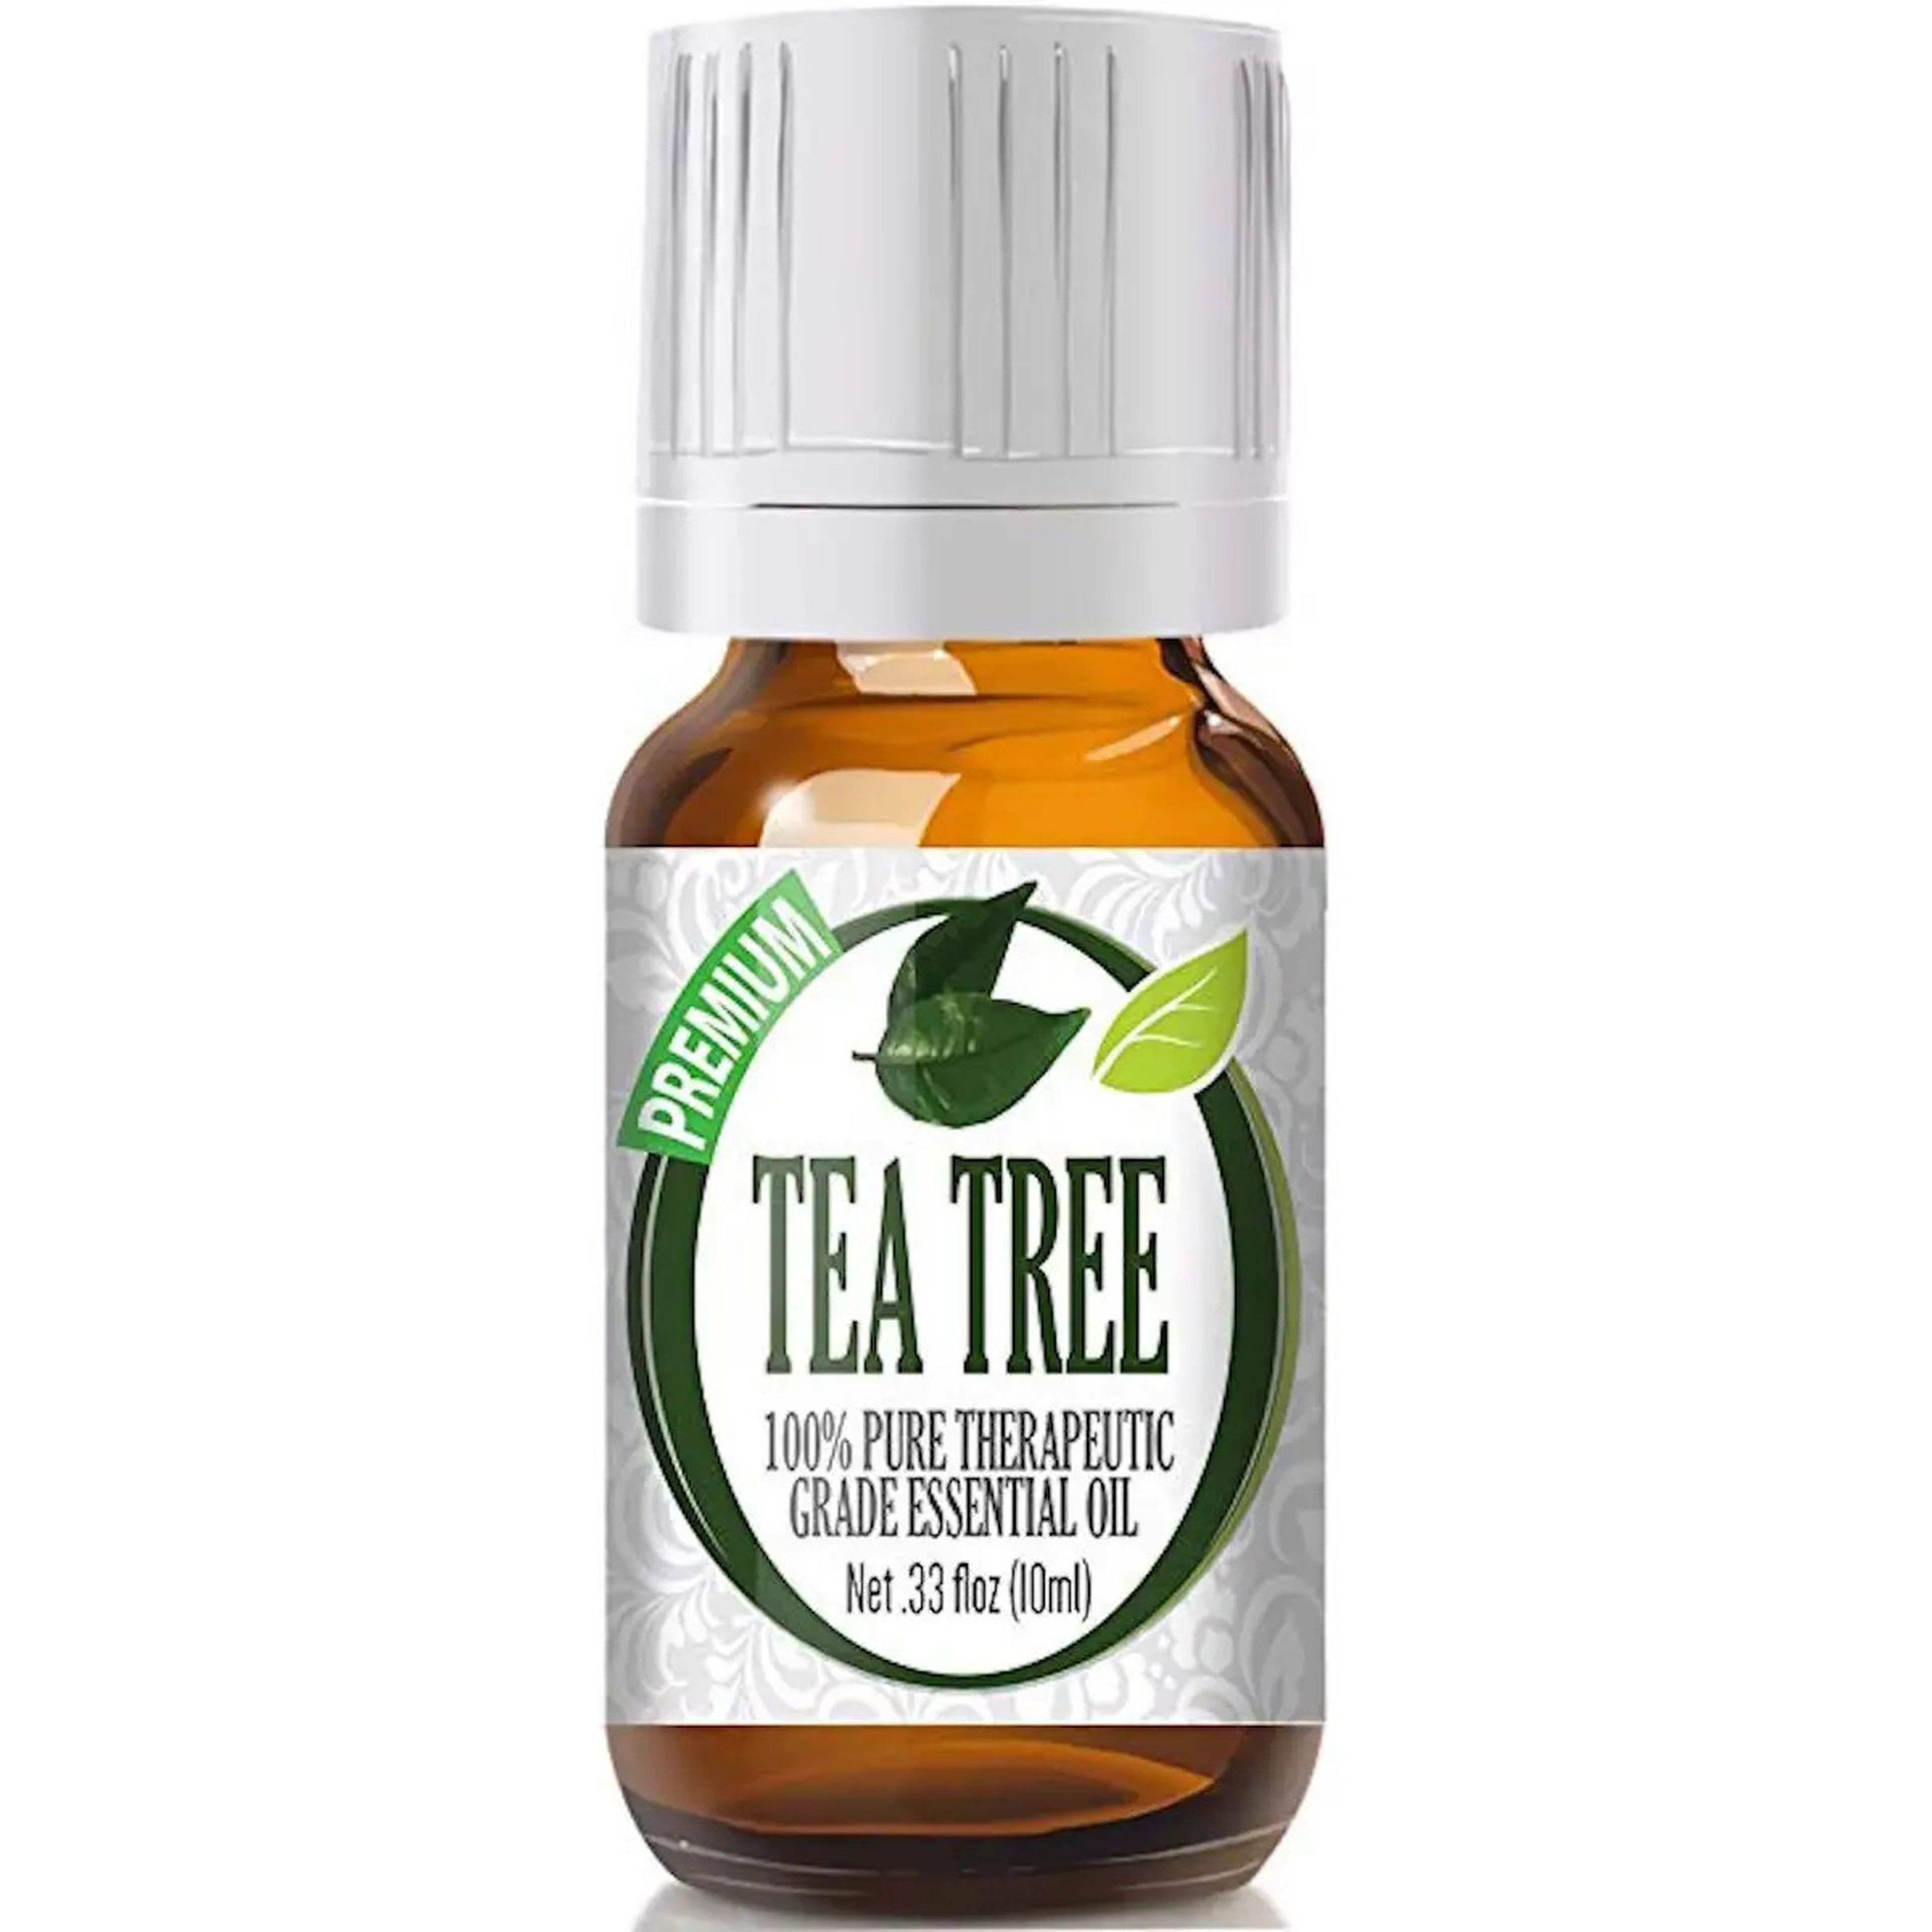 tea tree oil